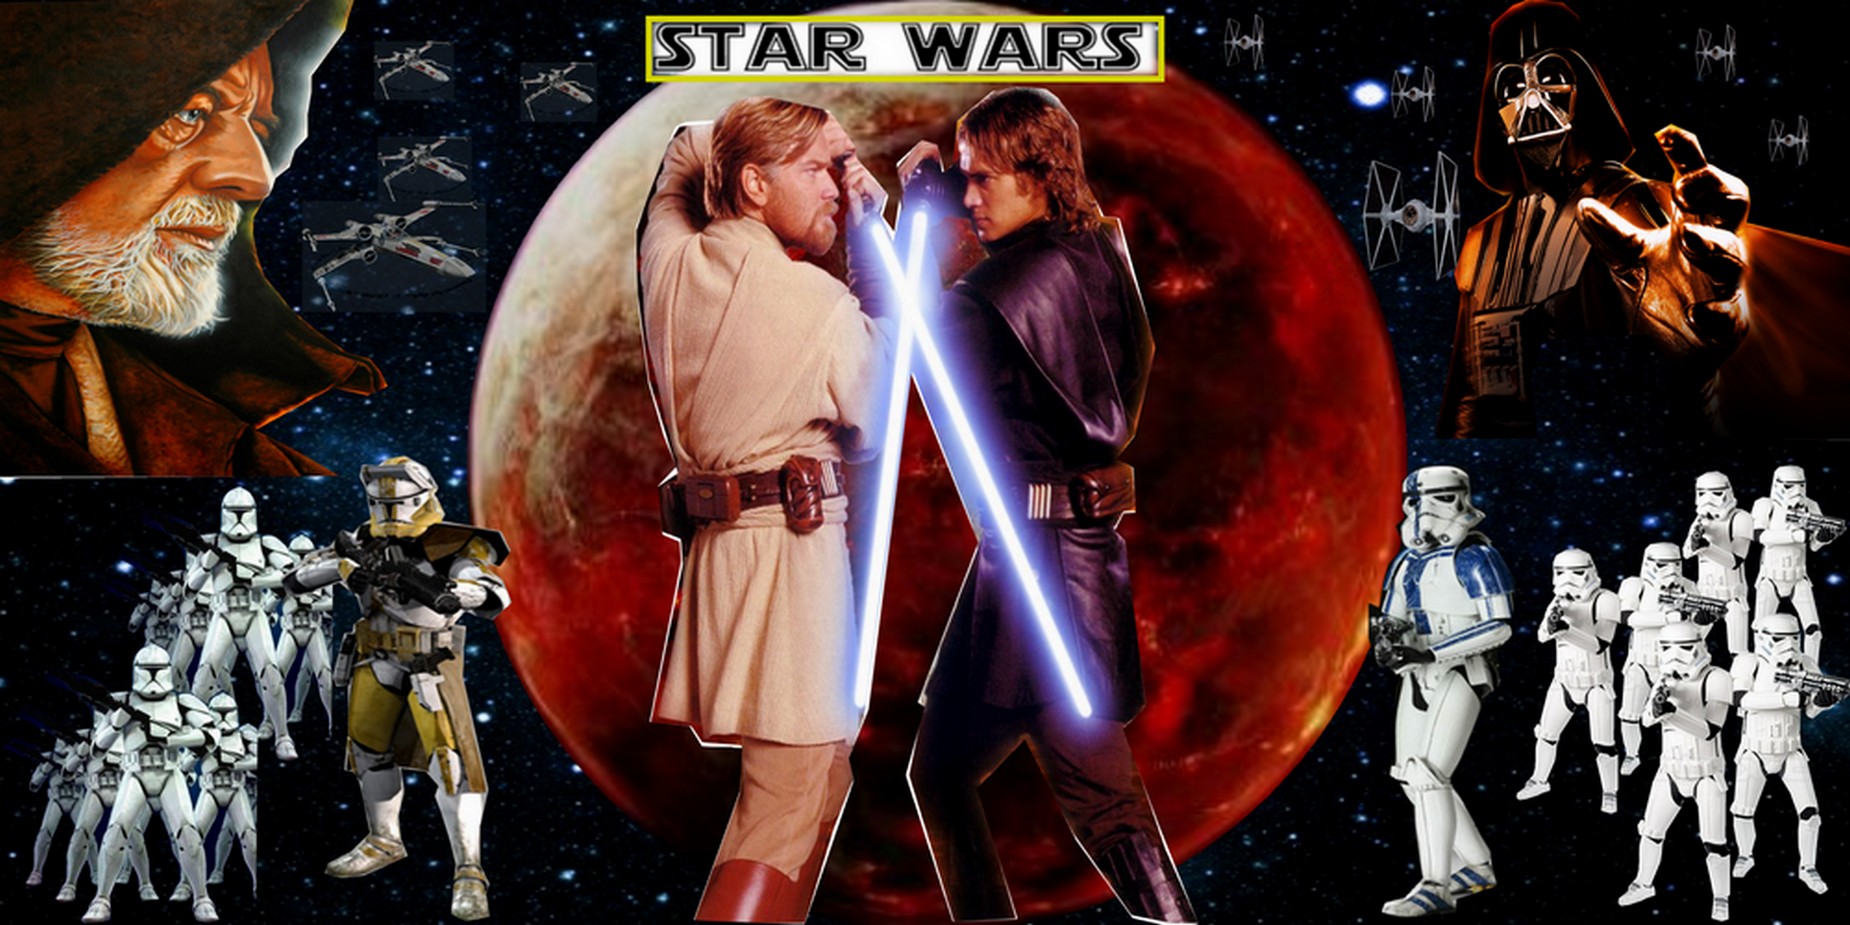 Star Wars Anakin Vs Obi Wan Anakin vs obi wan by darth 1850x925